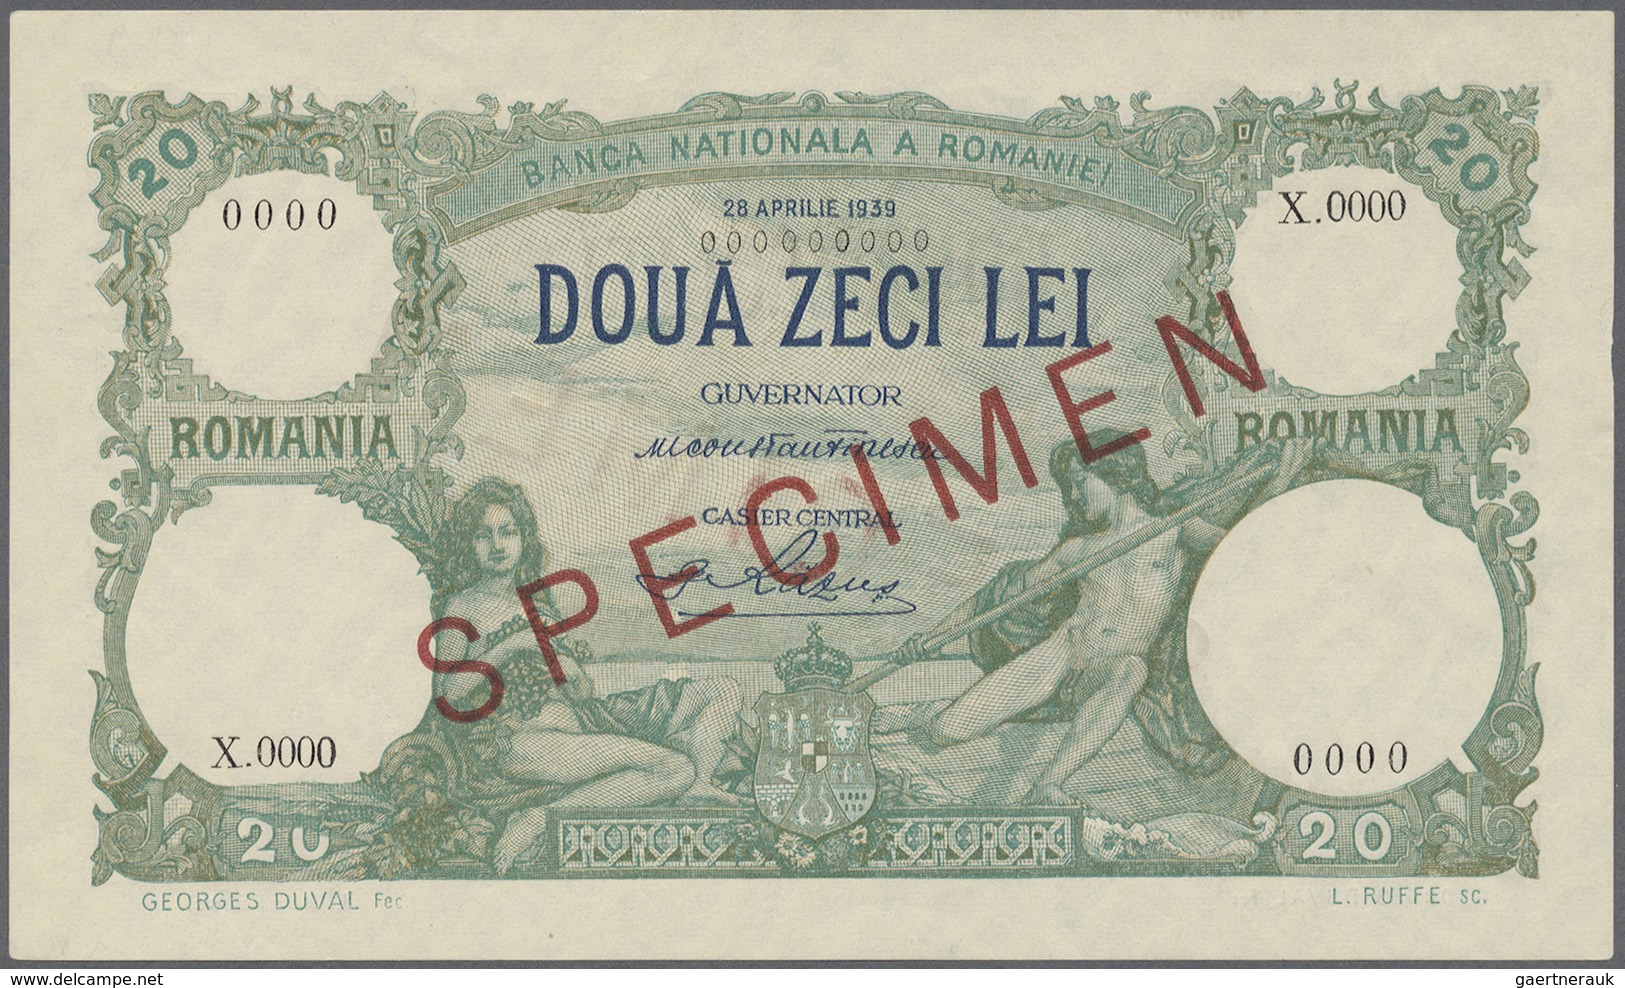 Romania / Rumänien: 20 Lei 1939 Specimen P. 41, Rare Note With Zero Serial Numbers, Red Specimen Ove - Romania